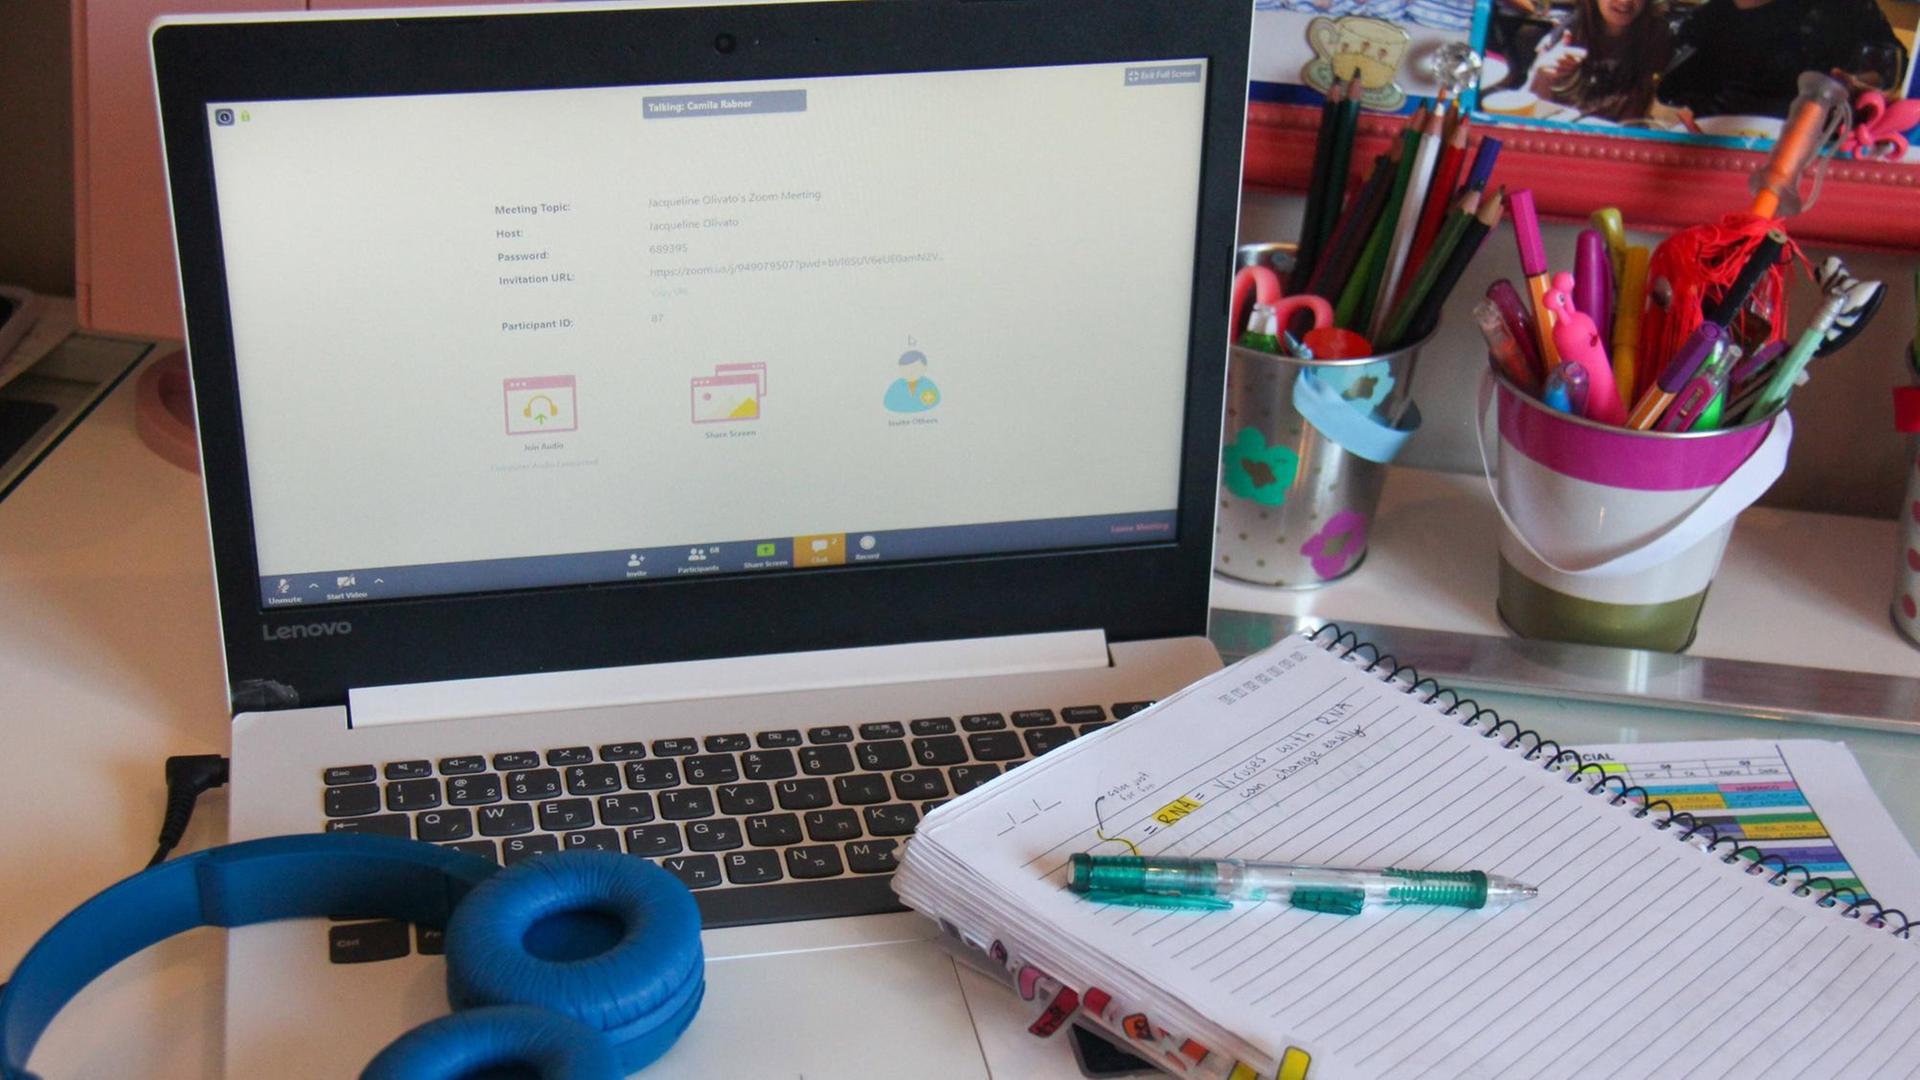 Ein Laptop, ein Notizblock und Kopfhörer eines Schulkinds liegen auf einem Schreibtisch